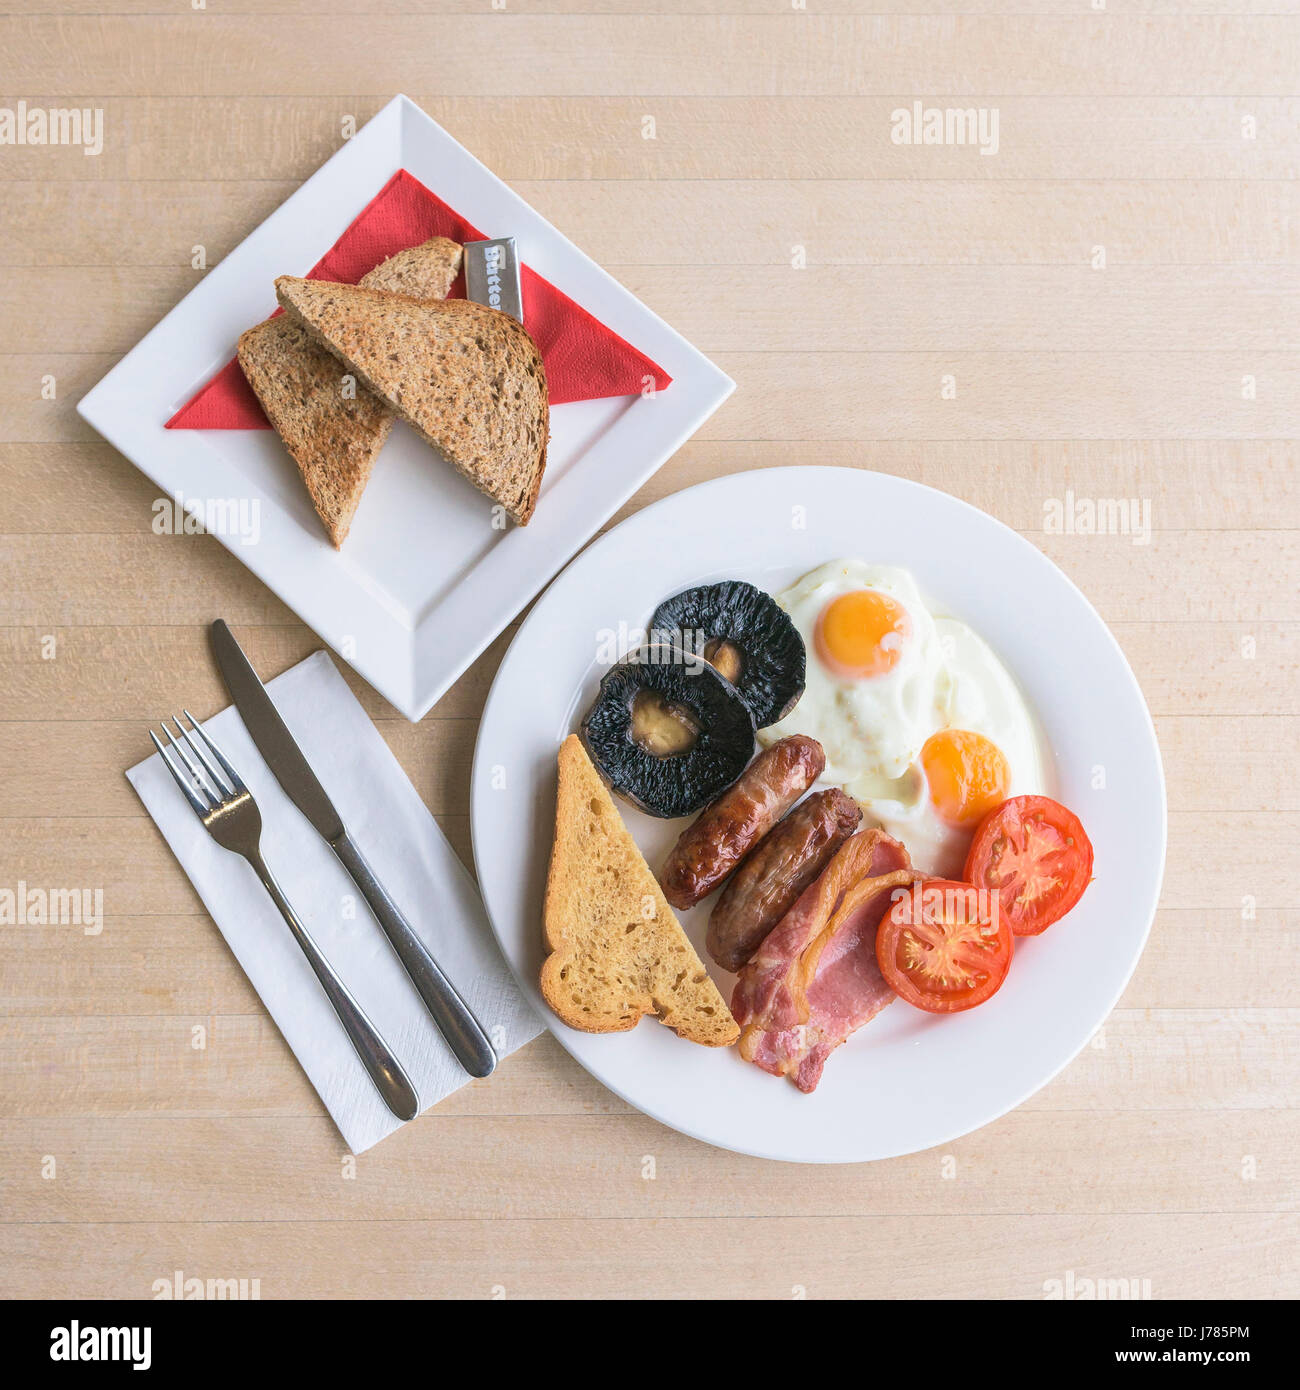 Eine Draufsicht auf ein komplettes englisches Frühstück; Essen; Mahlzeit am Morgen; Braten bis; Kalorien; Toast; Eier; Speck; Würstchen; Gebratenes Brot; Champignons; Stockfoto